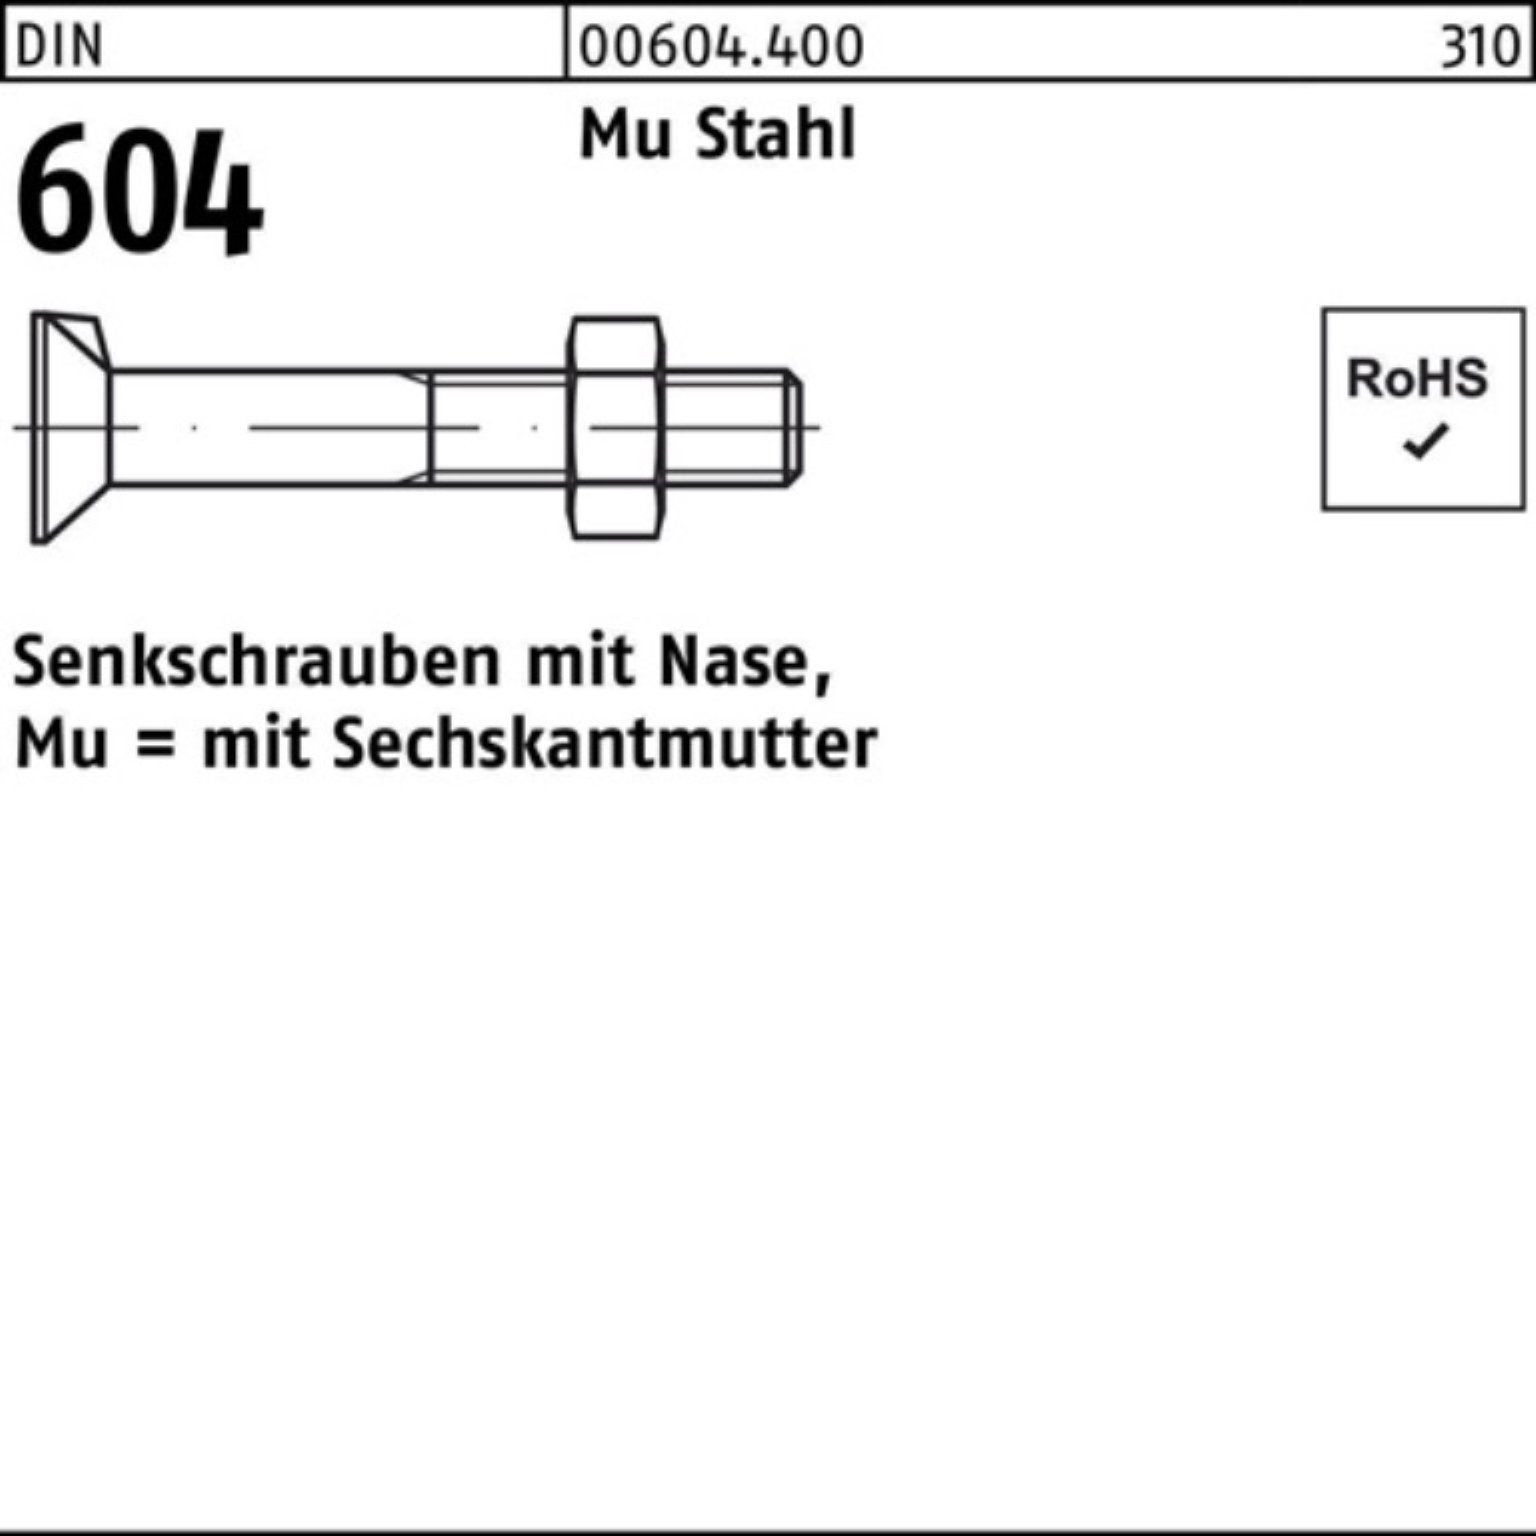 Reyher Senkschraube 500er Pack Senkschraube DIN 604 Nase/6-ktmutter M6x 20 Mu Stahl 4.6 50